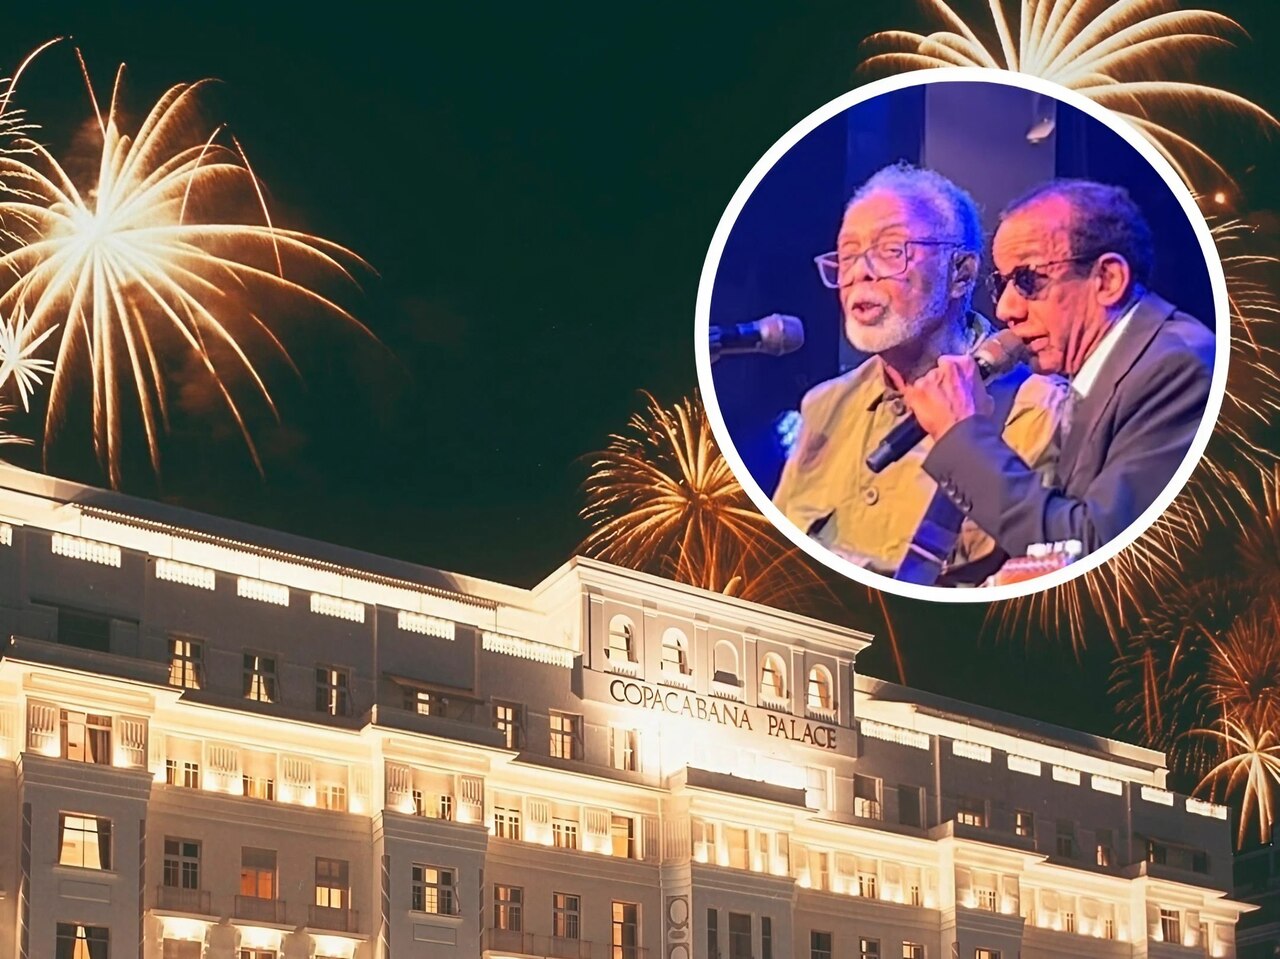 Copacabana Palace inicia festa de 100 anos com jantar de gala e show de Gil com participação de Jorge Ben Jor